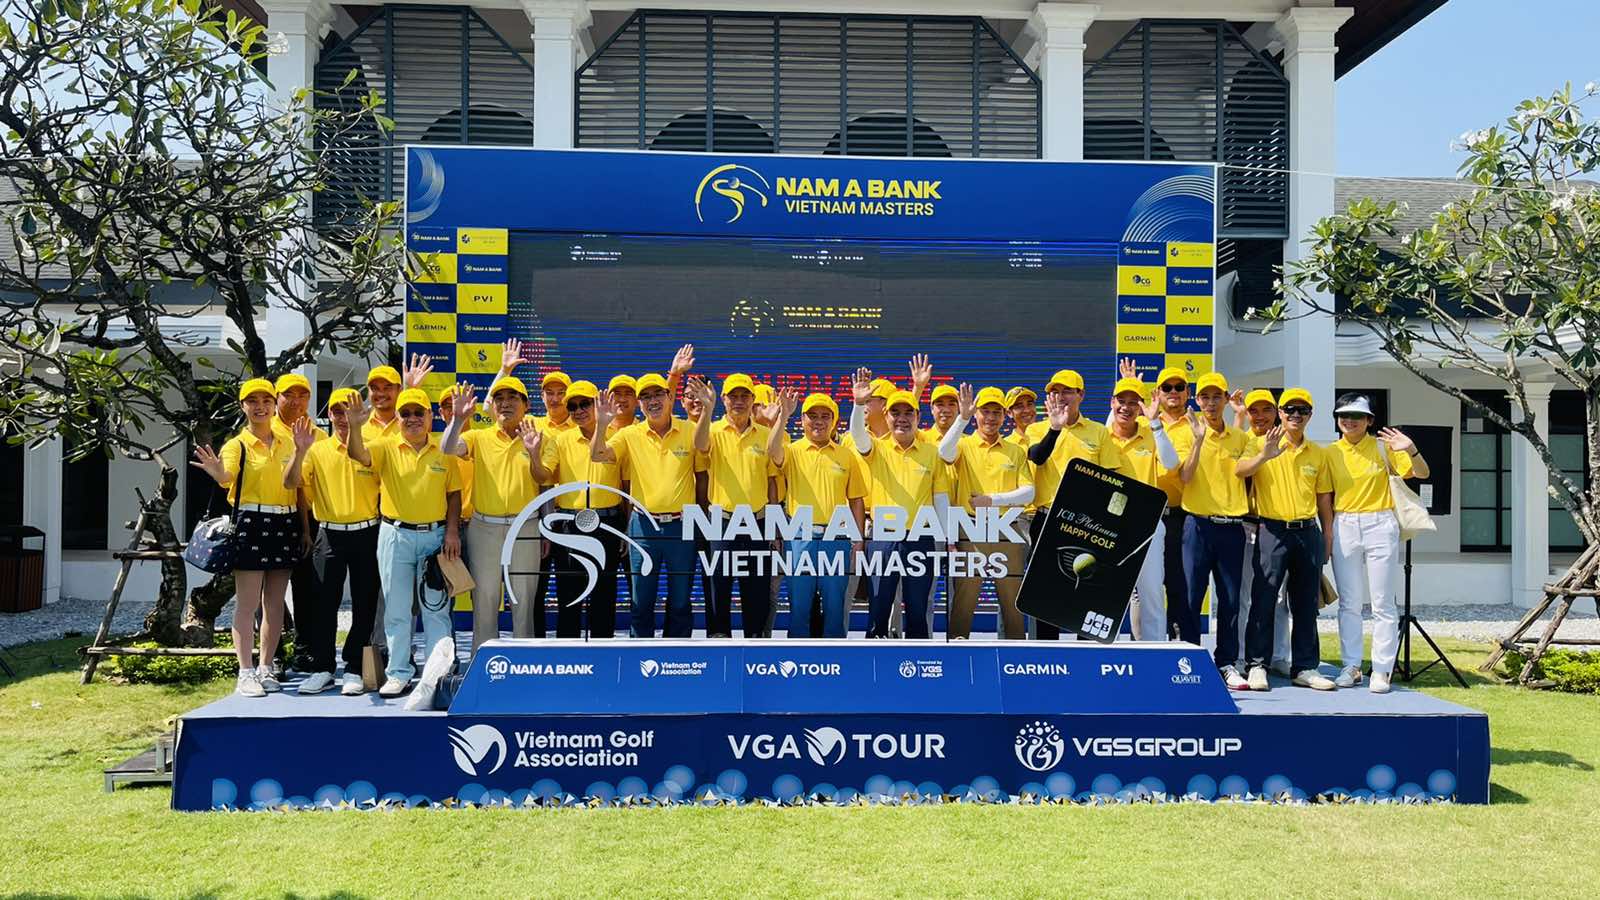 Nam A Bank Vietnam Masters 2022 – Nơi hội tụ các golfer chuyên nghiệp - Ảnh 1.